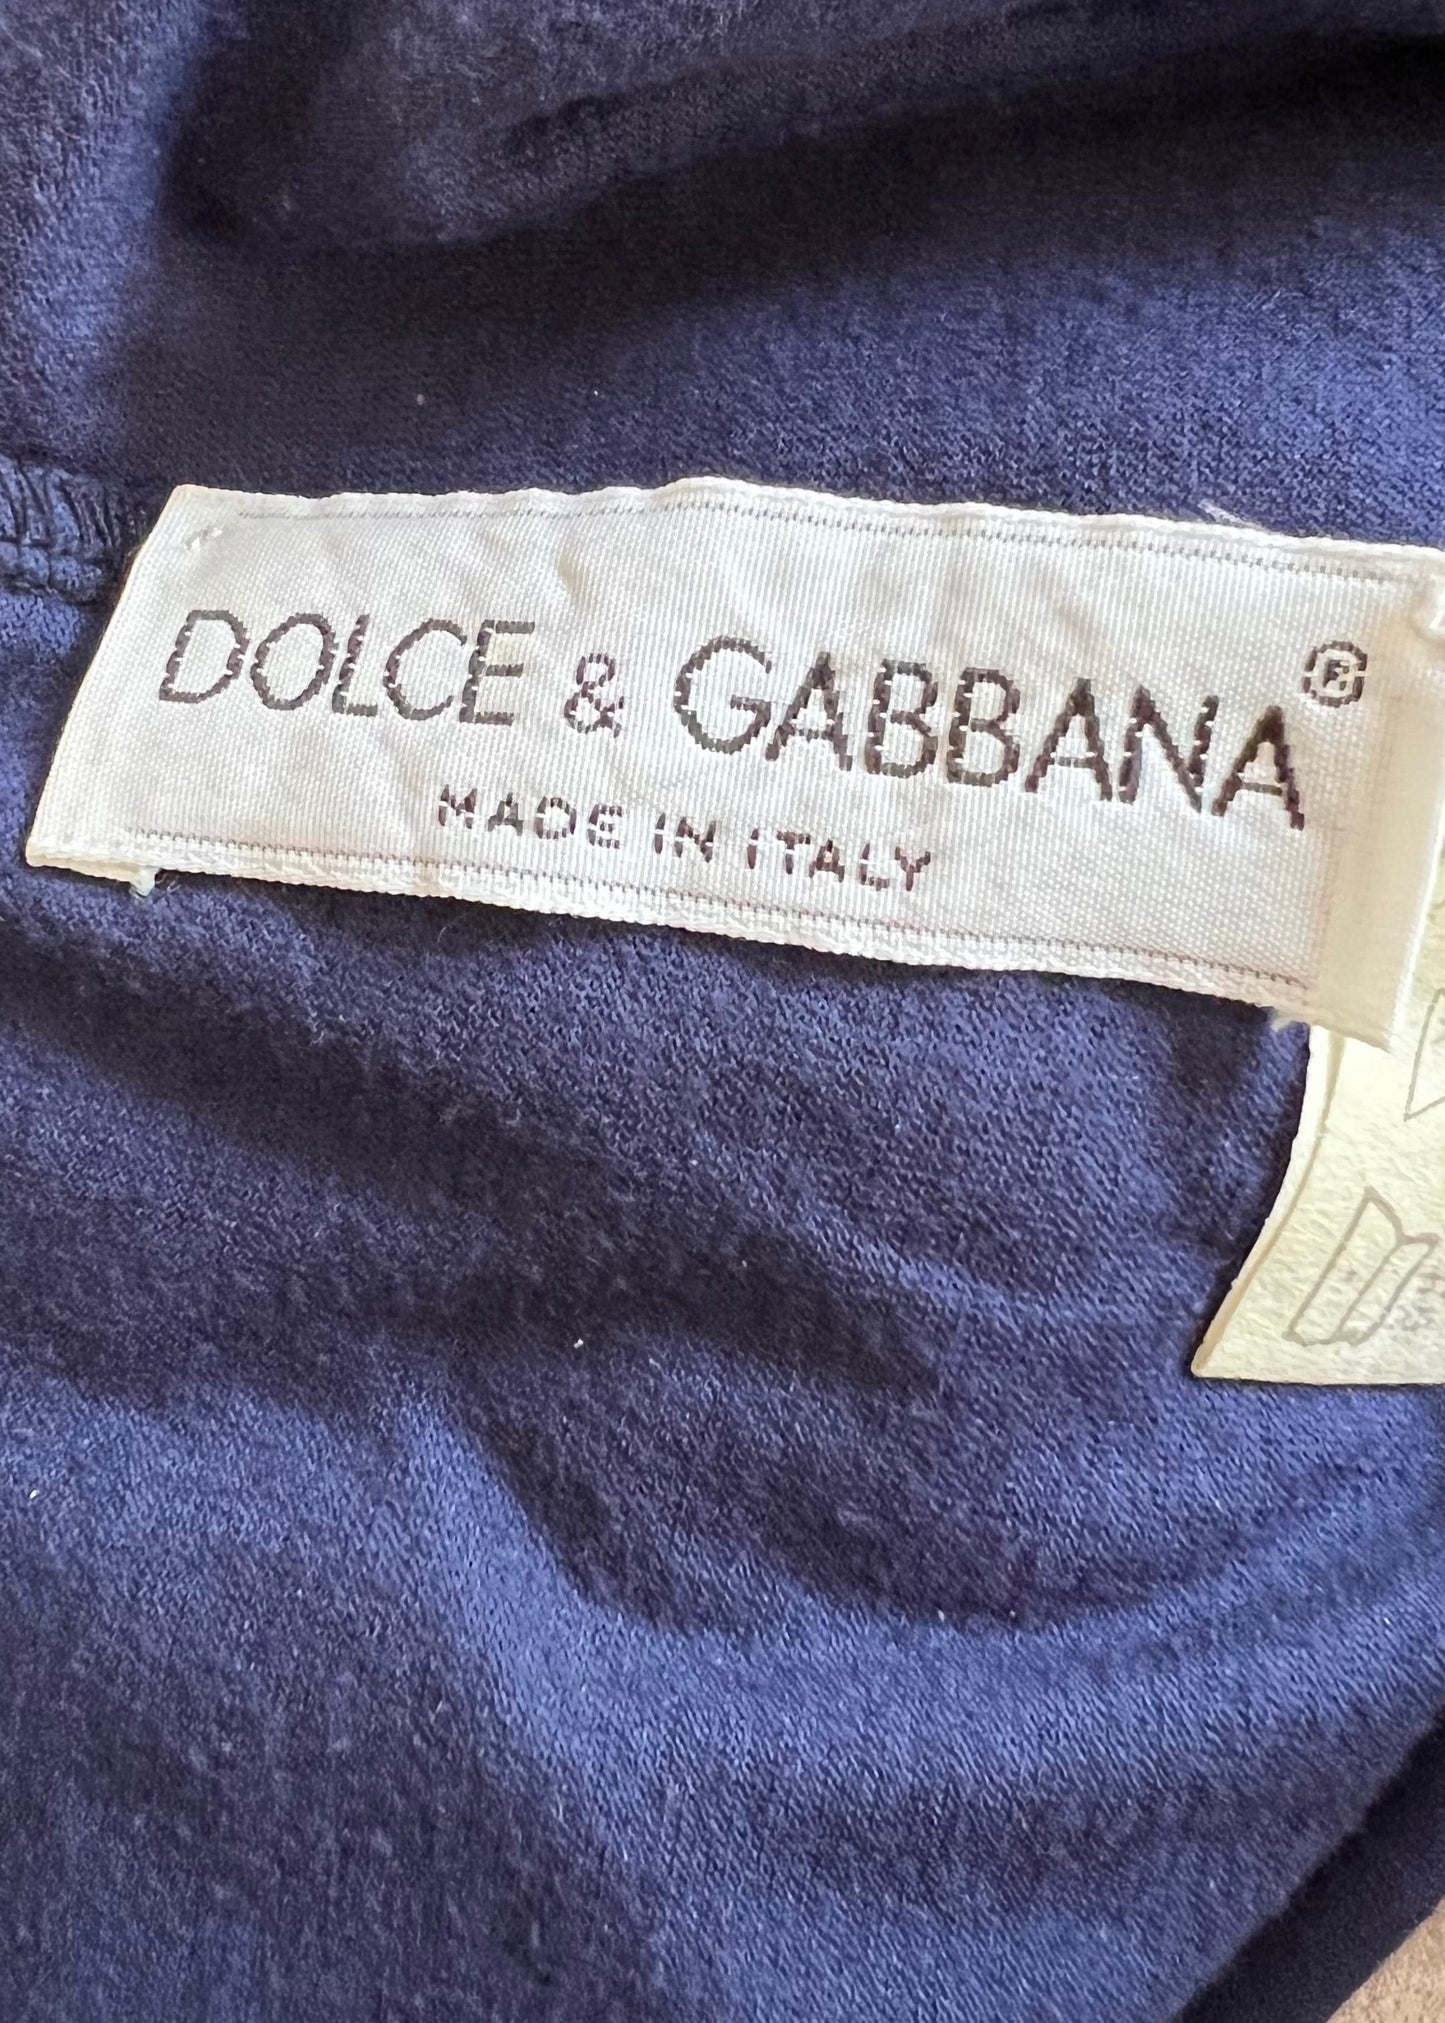 Dolce & Gabbana Spring 1991 Silk Chiffon Ruffle Hem Dress